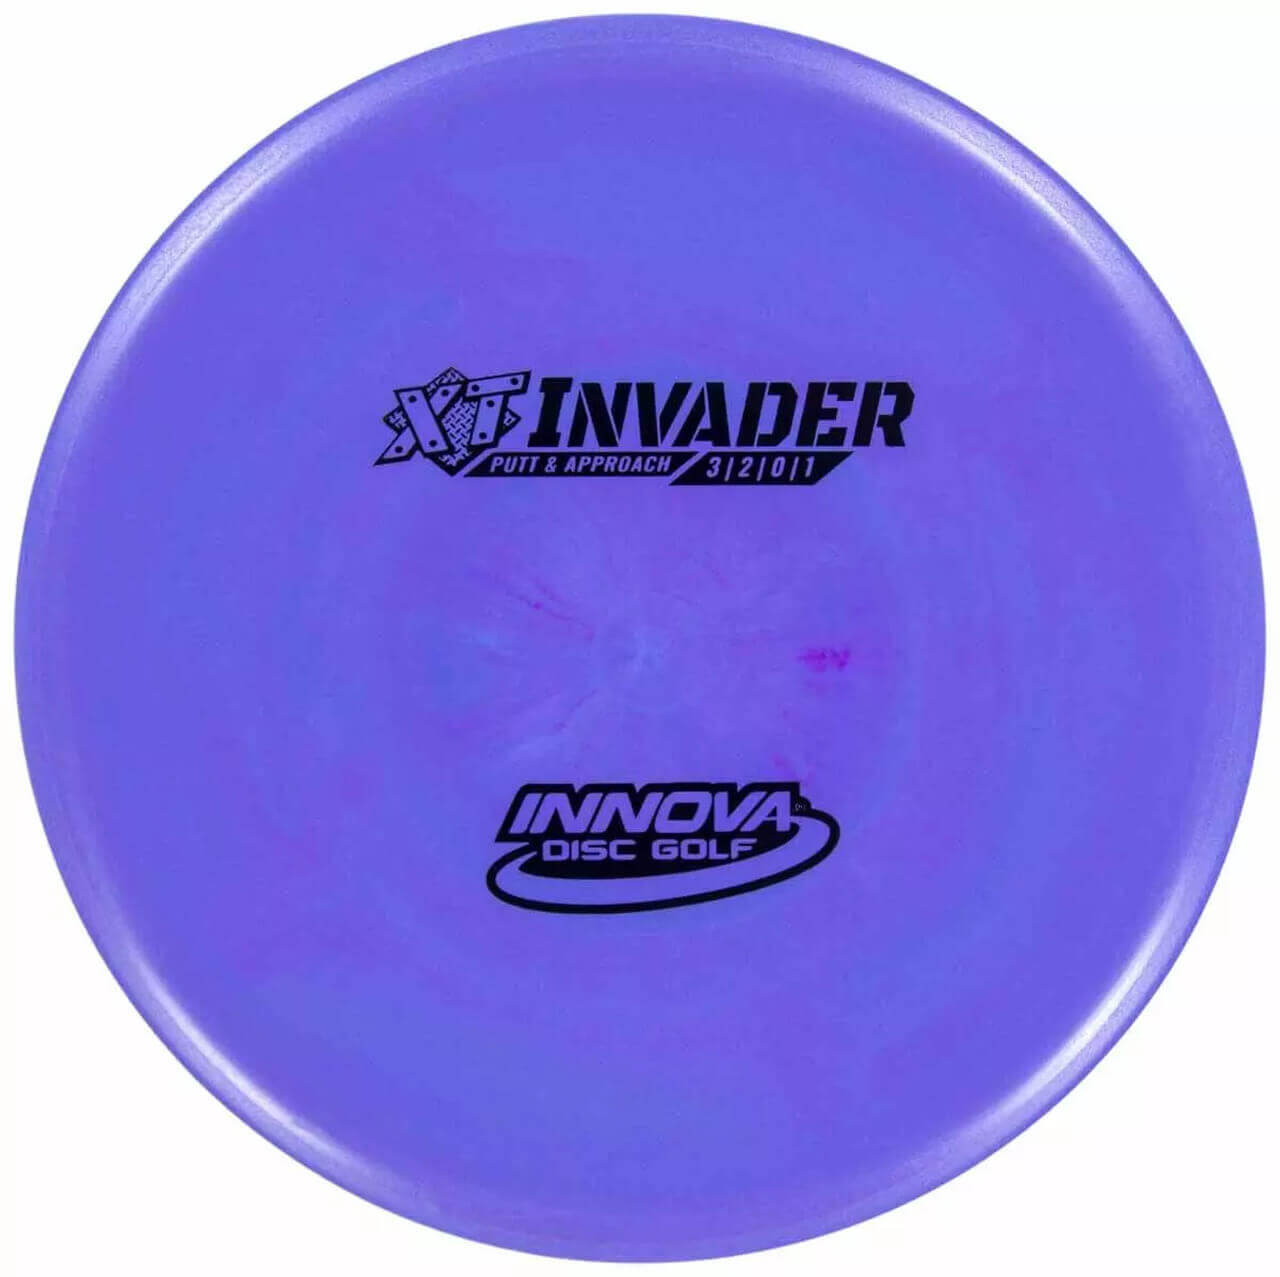 Innova Disc Golf Putter XT Invader